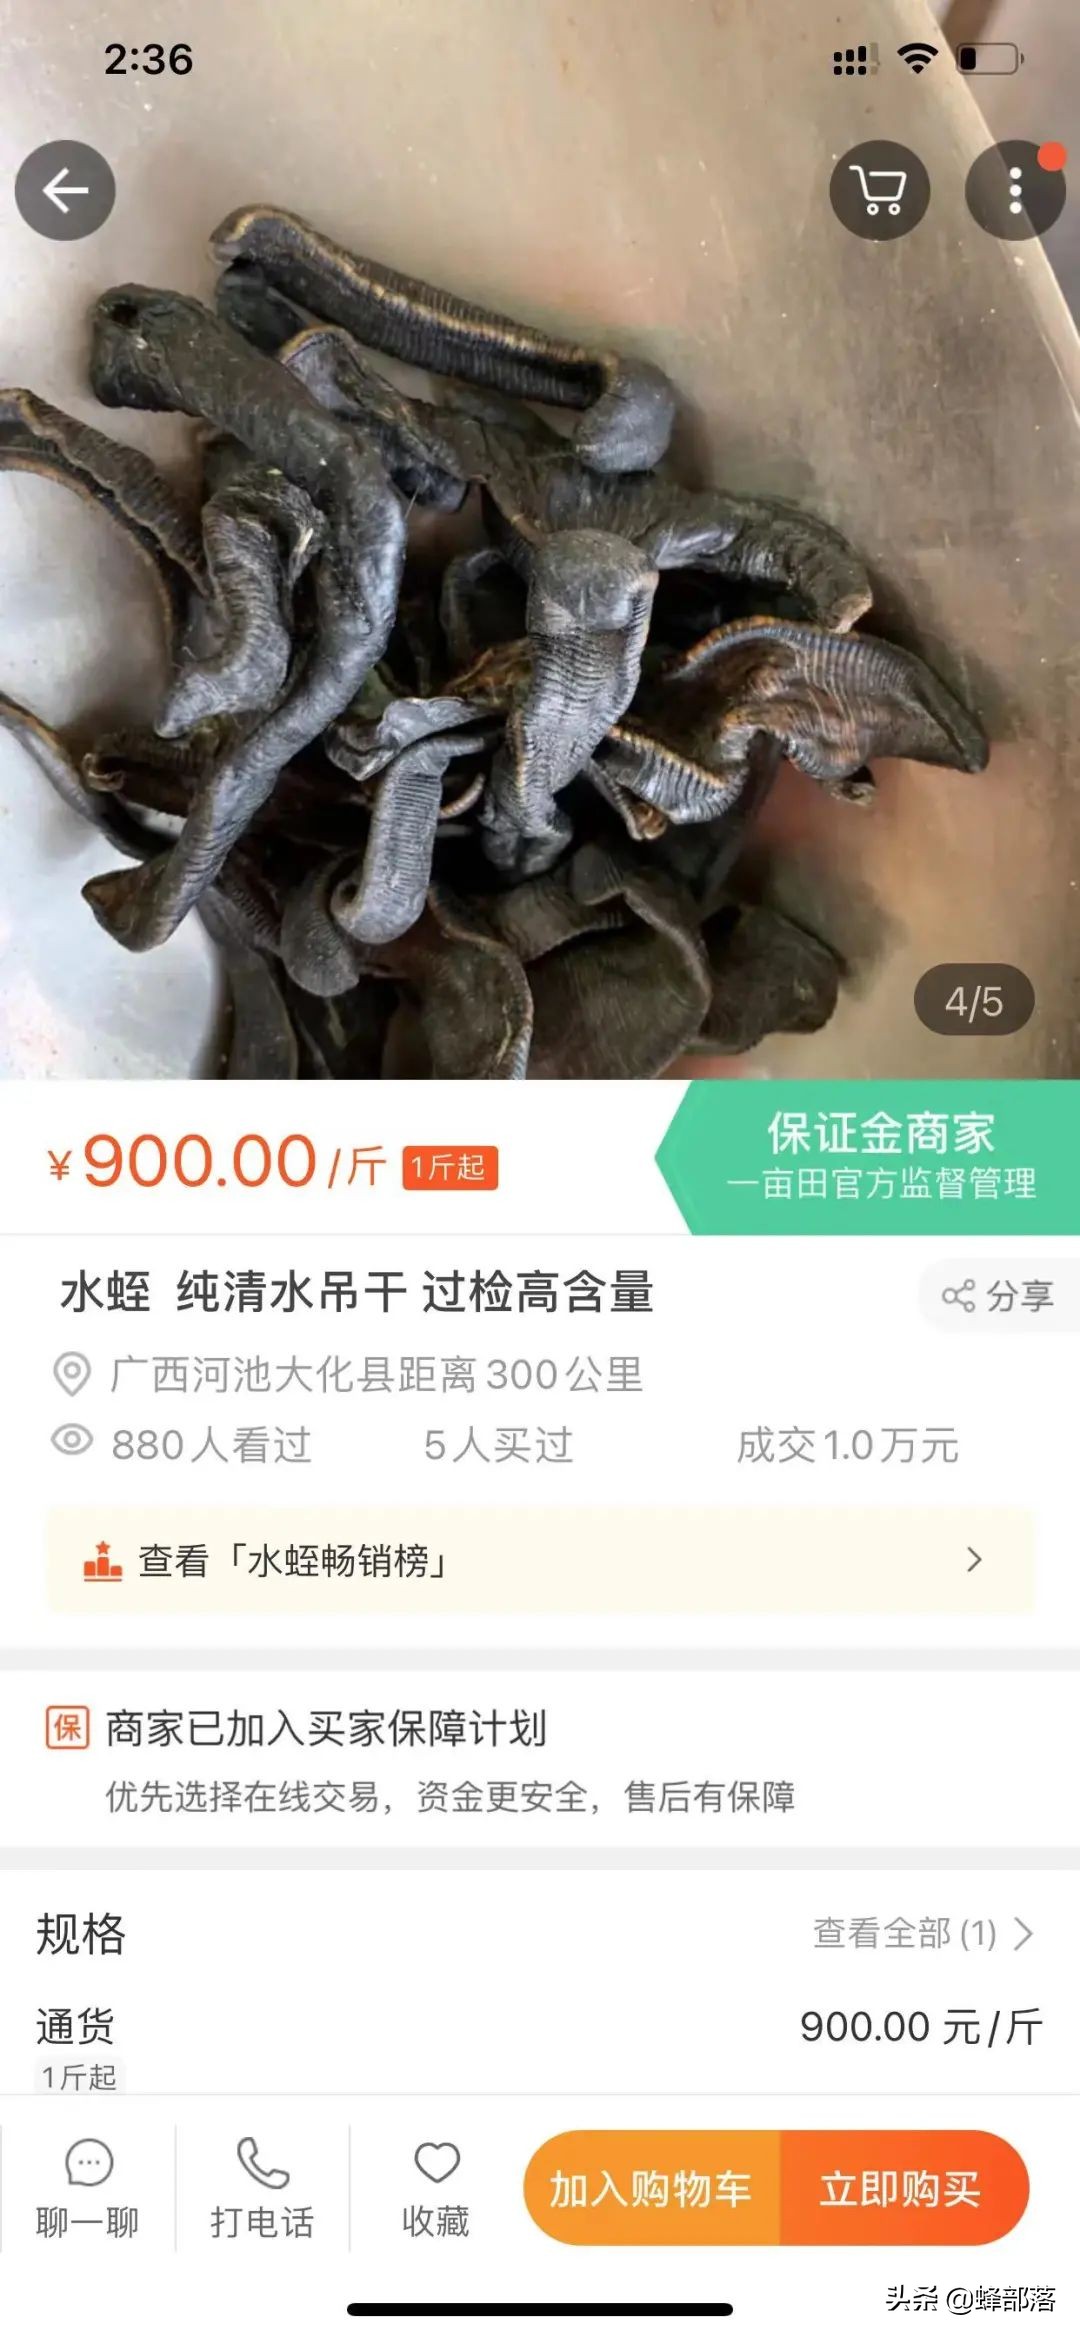 拥有“不死之身”的蚂蝗，缘何卖到900元一斤？新价值被发现